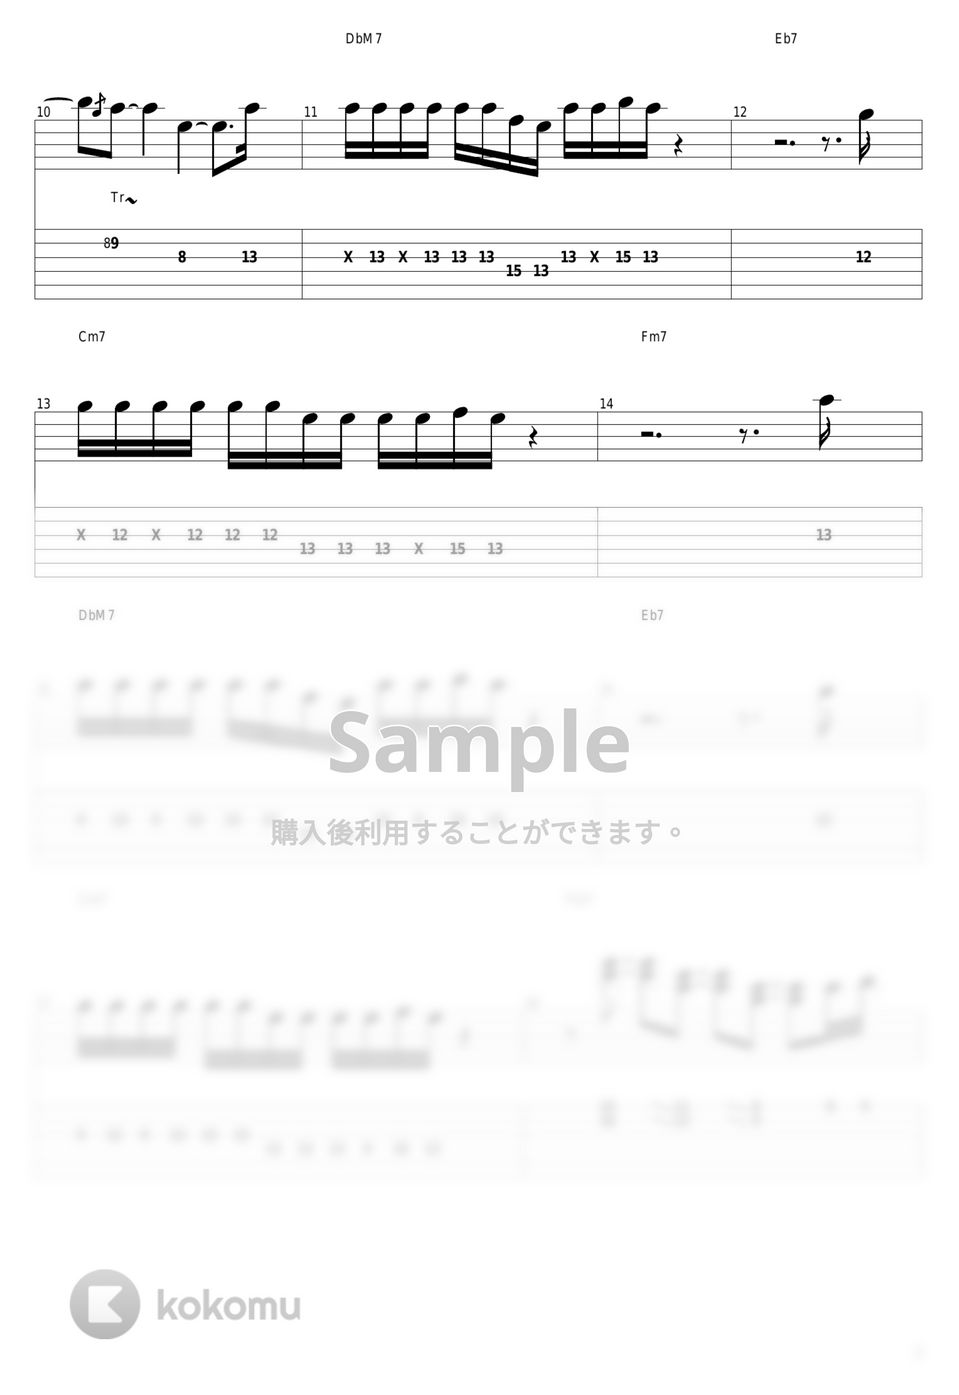 結束バンド - 星座になれたら (ぼっちパート) by guitar cover with tab